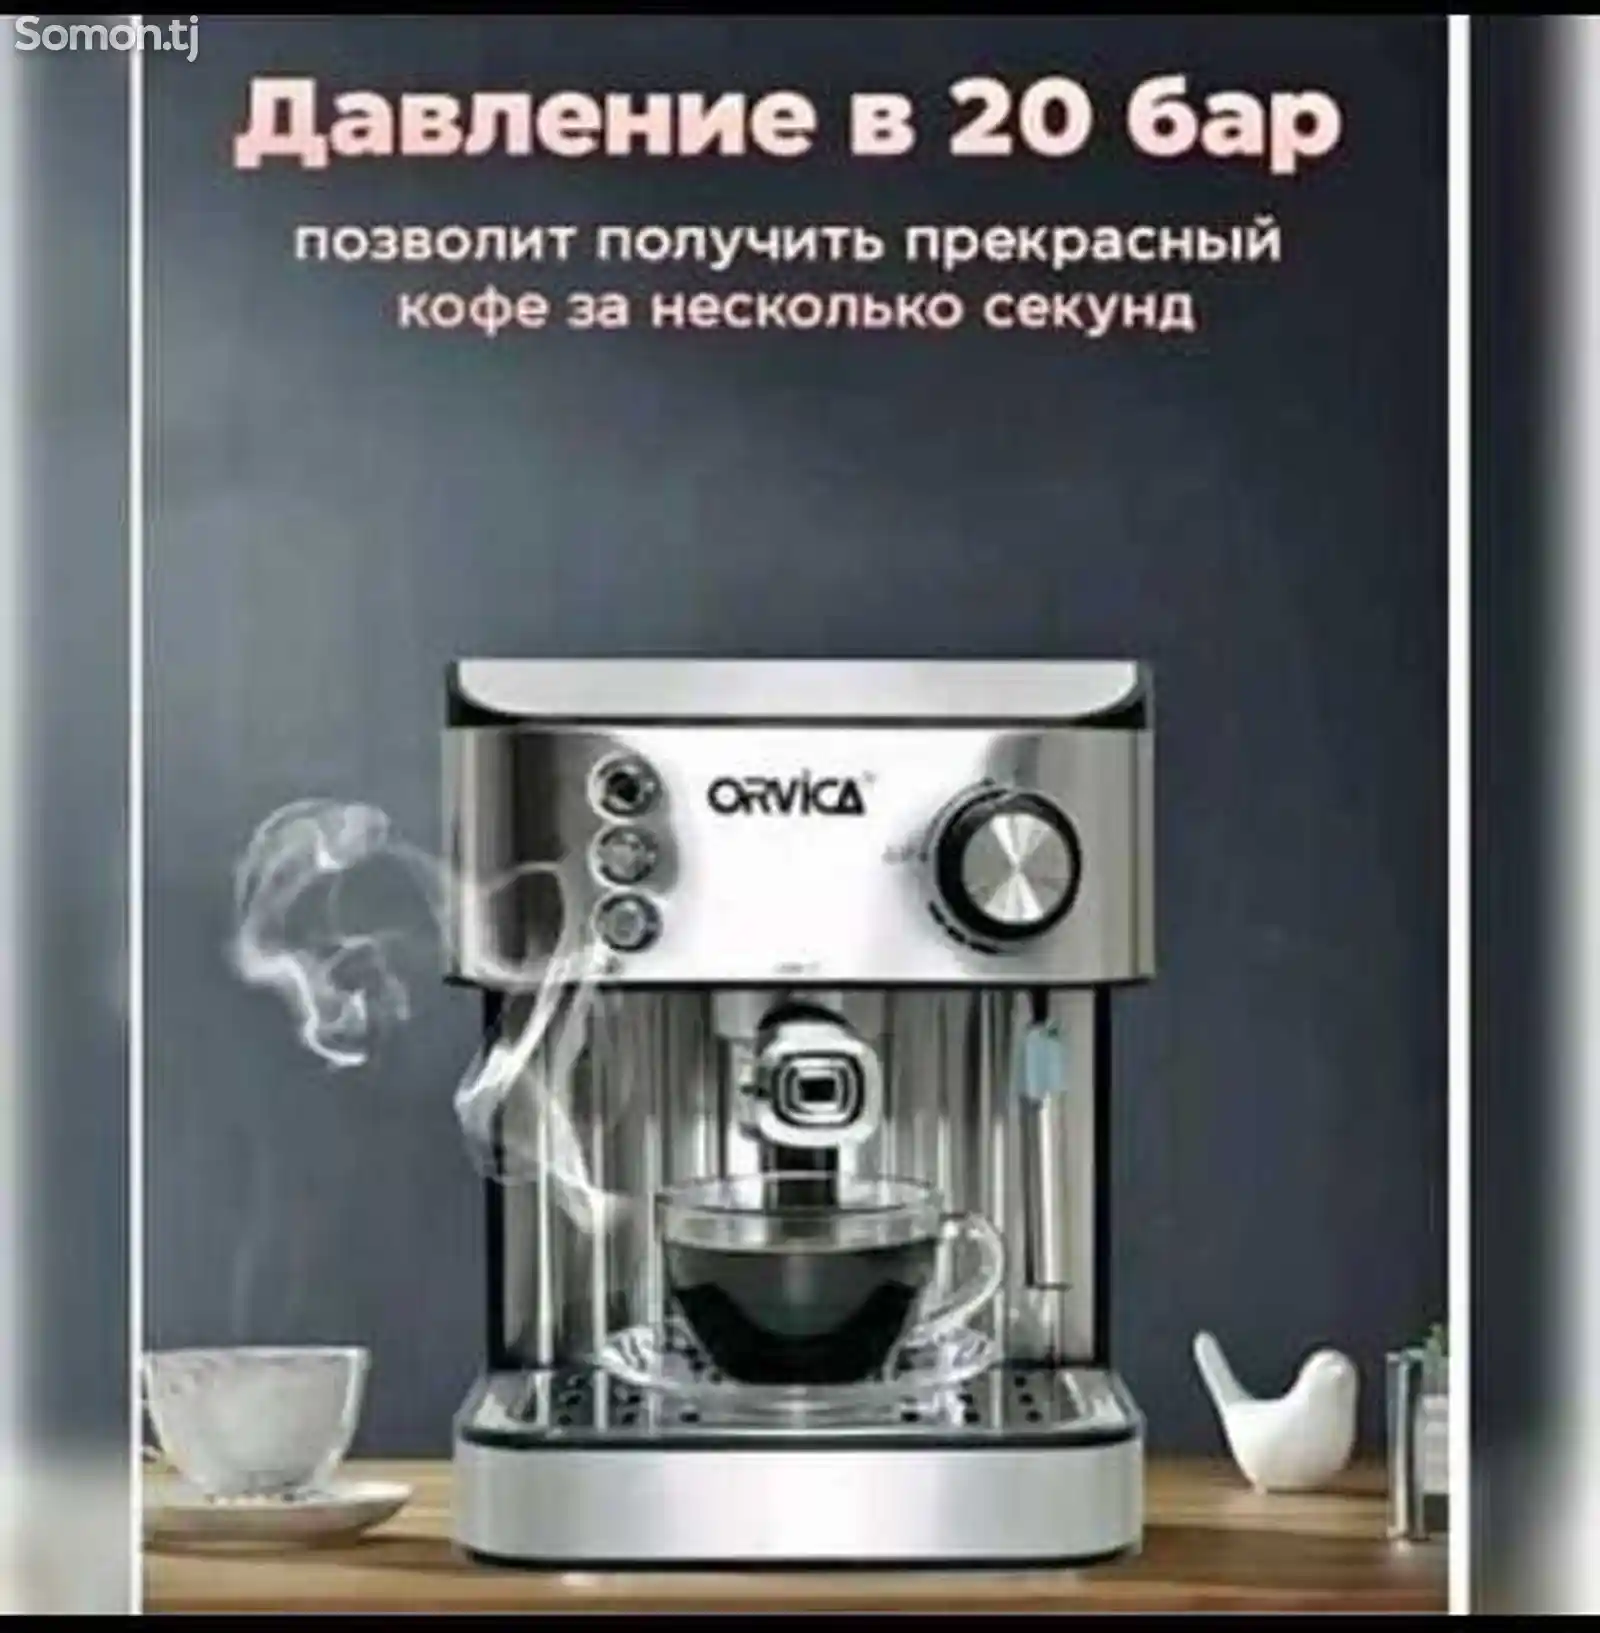 Кофеварка orvika-5